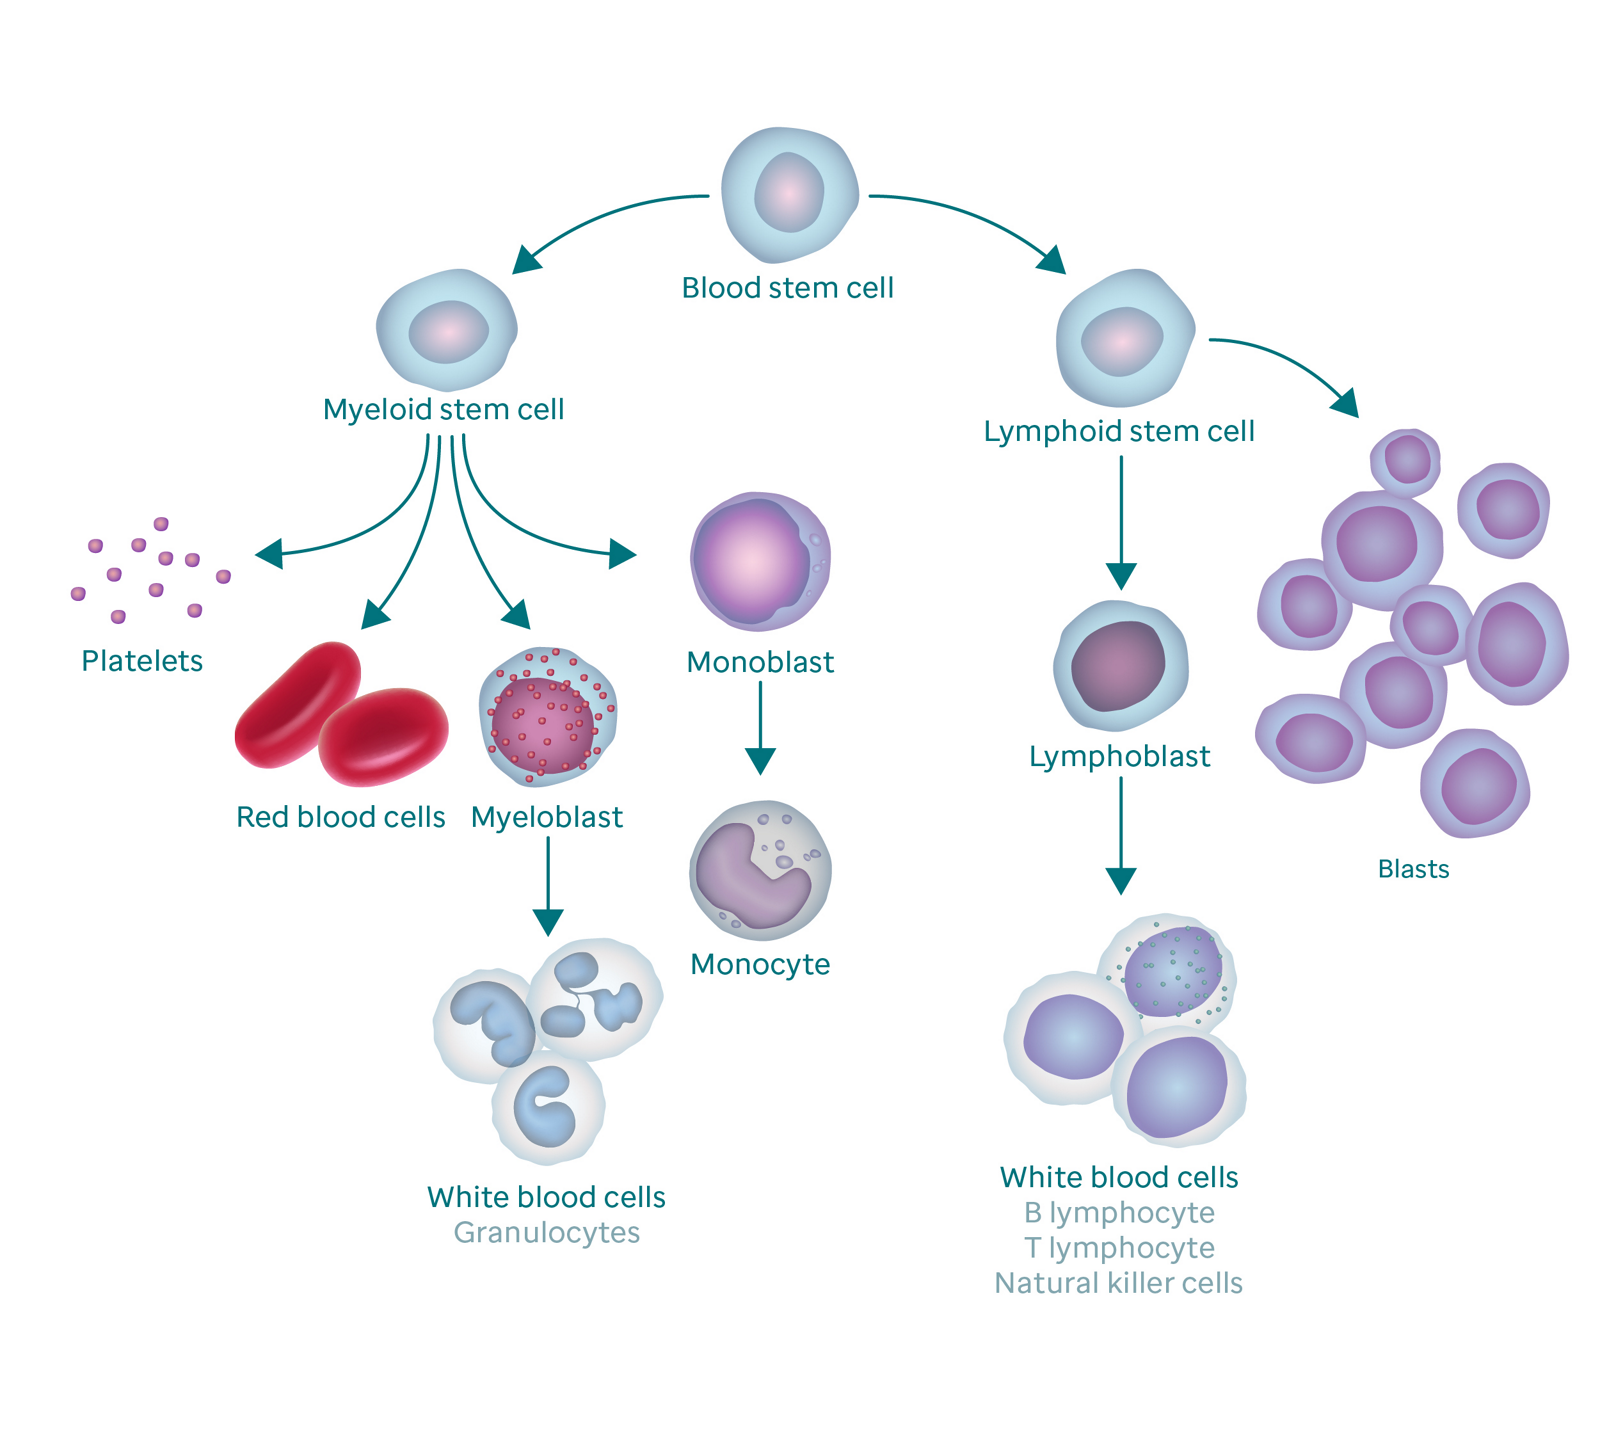 Grafiikka, joka näyttää verenmuodostusprosessin ja kuinka se johtaa blastisoluihin.  Grafiikka alkaa veren kantasolulla.  Vasemmalla se haarautuu myeloidiseksi kantasoluksi, joka haarautuu verihiutaleiksi, punasoluiksi, myeloblastiksi ja monoblastiksi.  Myeloblastit muuttuvat valkosoluiksi (kutsutaan myös granulosyyteiksi) ja monoblasti monosyyteiksi.  Veren kantasolun oikea haara menee lymfoidiseen kantasoluun, joka haarautuu lymfoblasteiksi (jotka muuttuvat valkosoluiksi) ja blastisoluiksi.